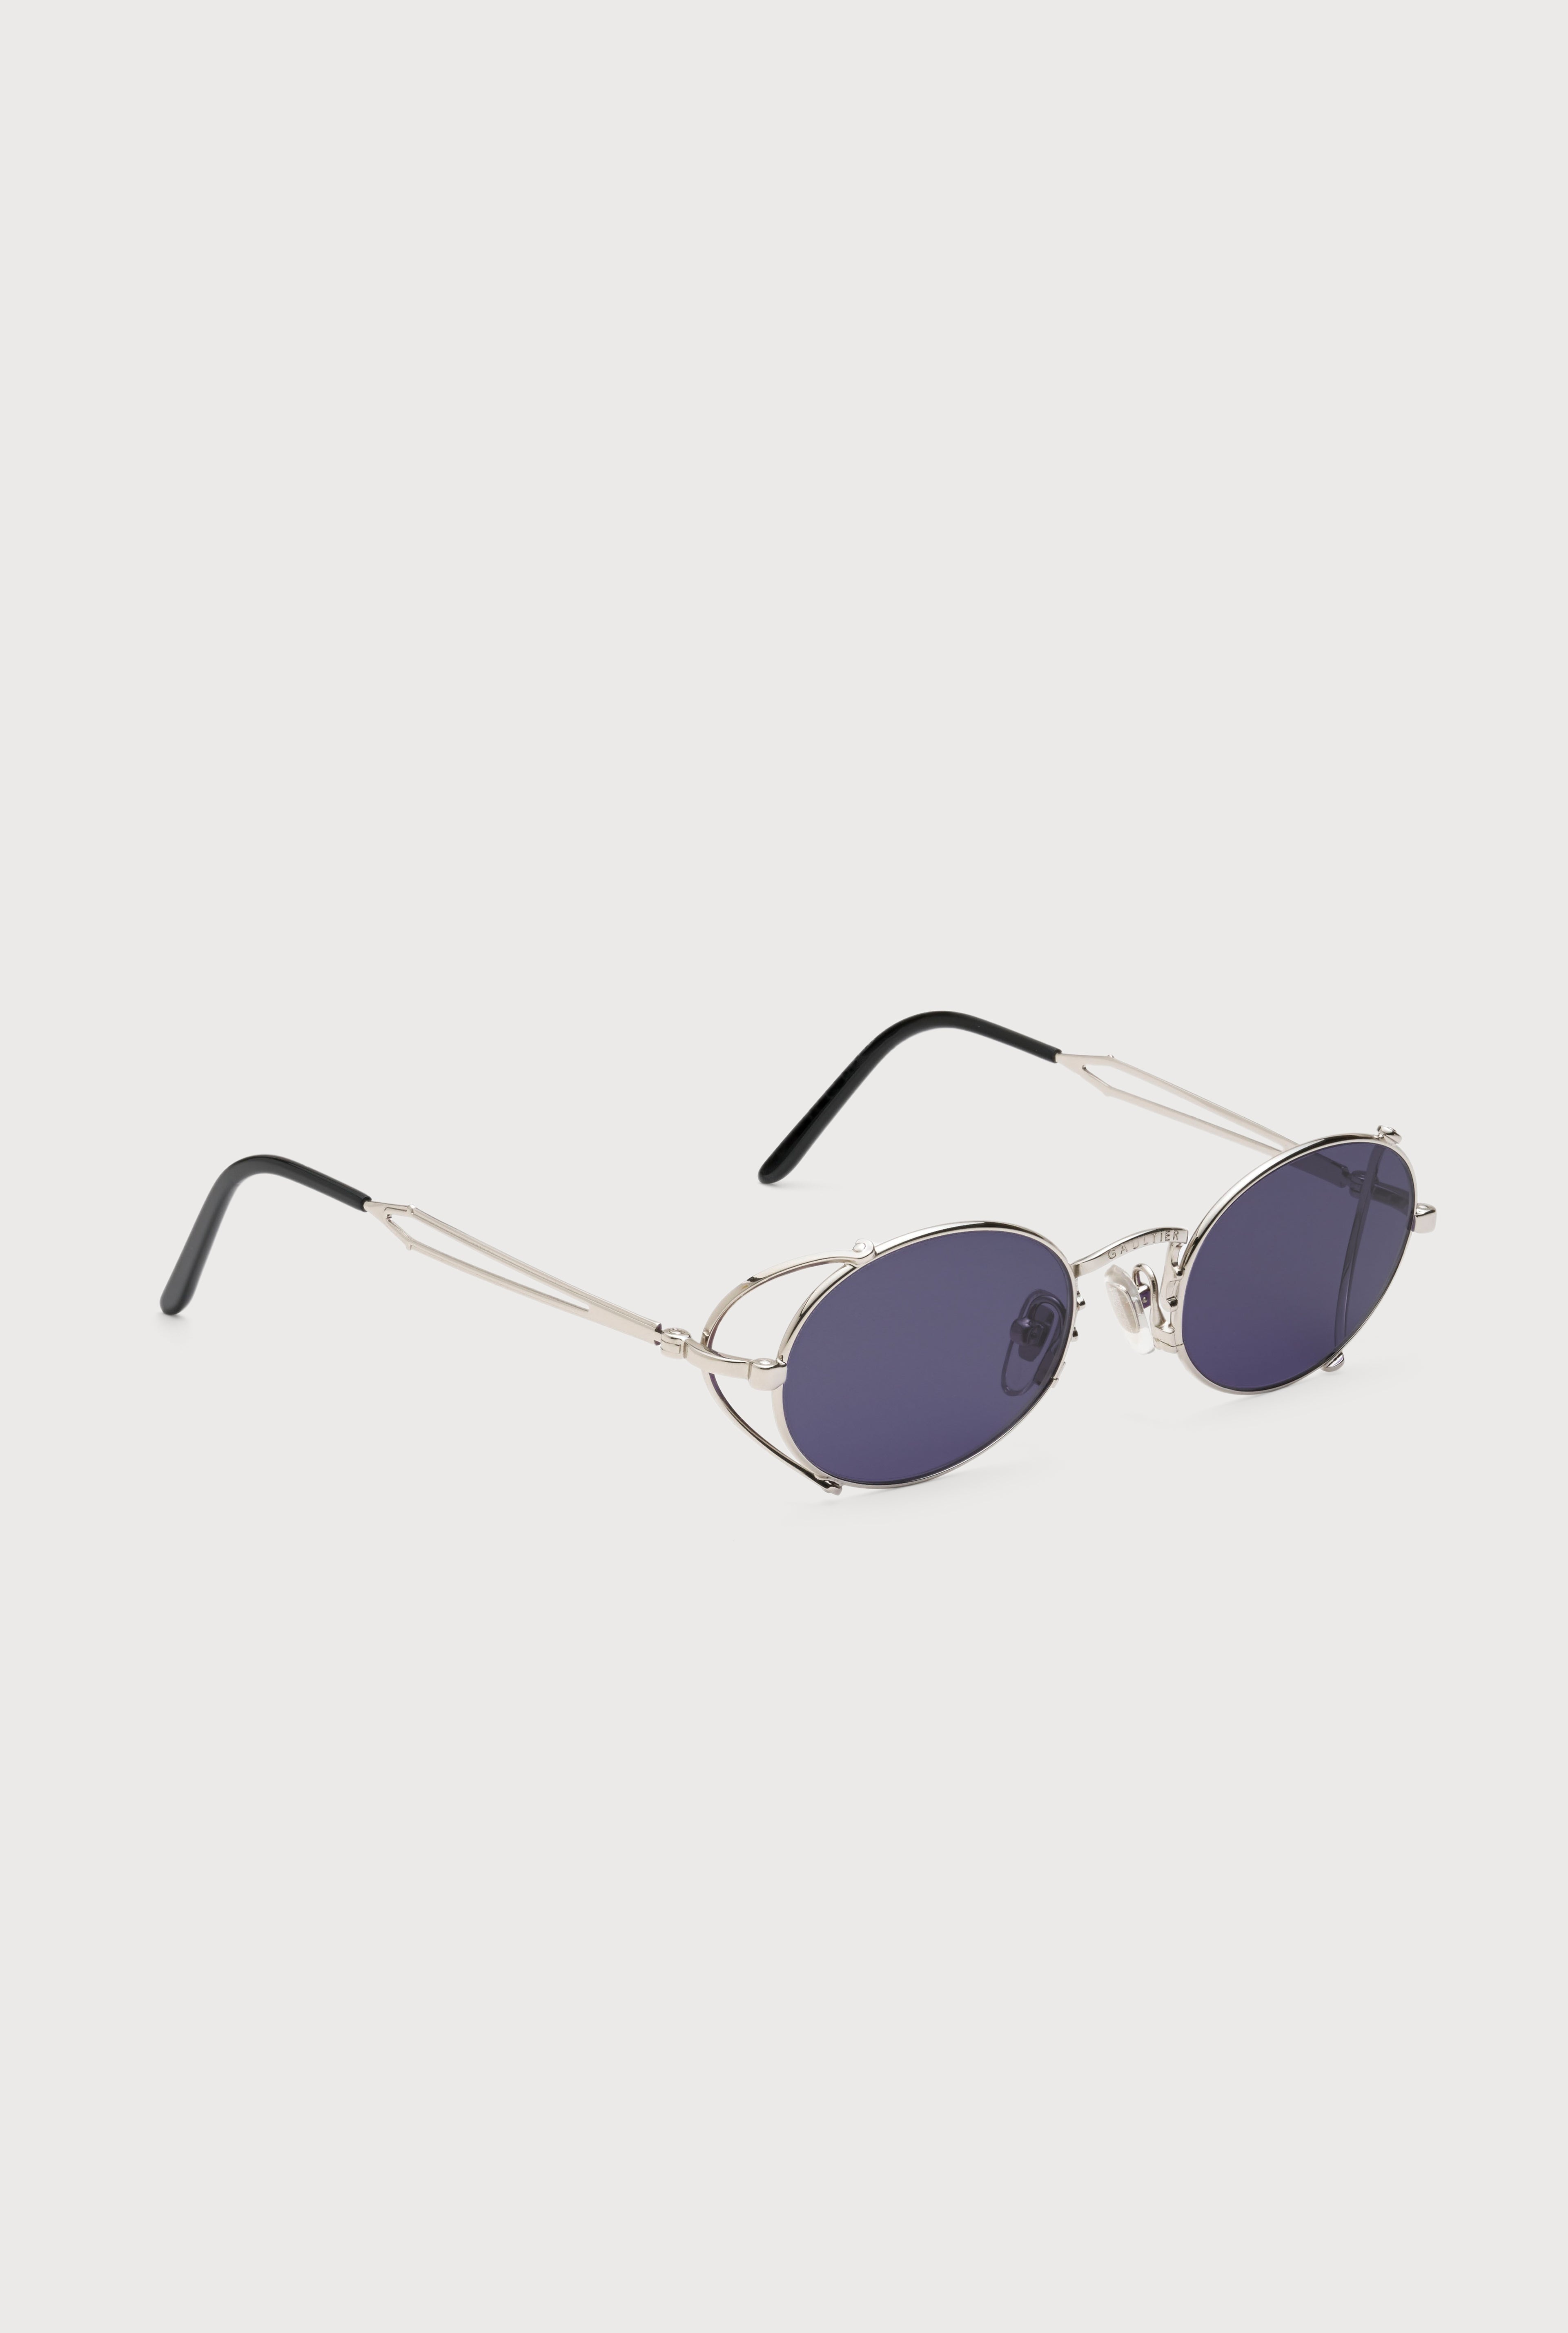 The Silver 55-3175 Sunglasses